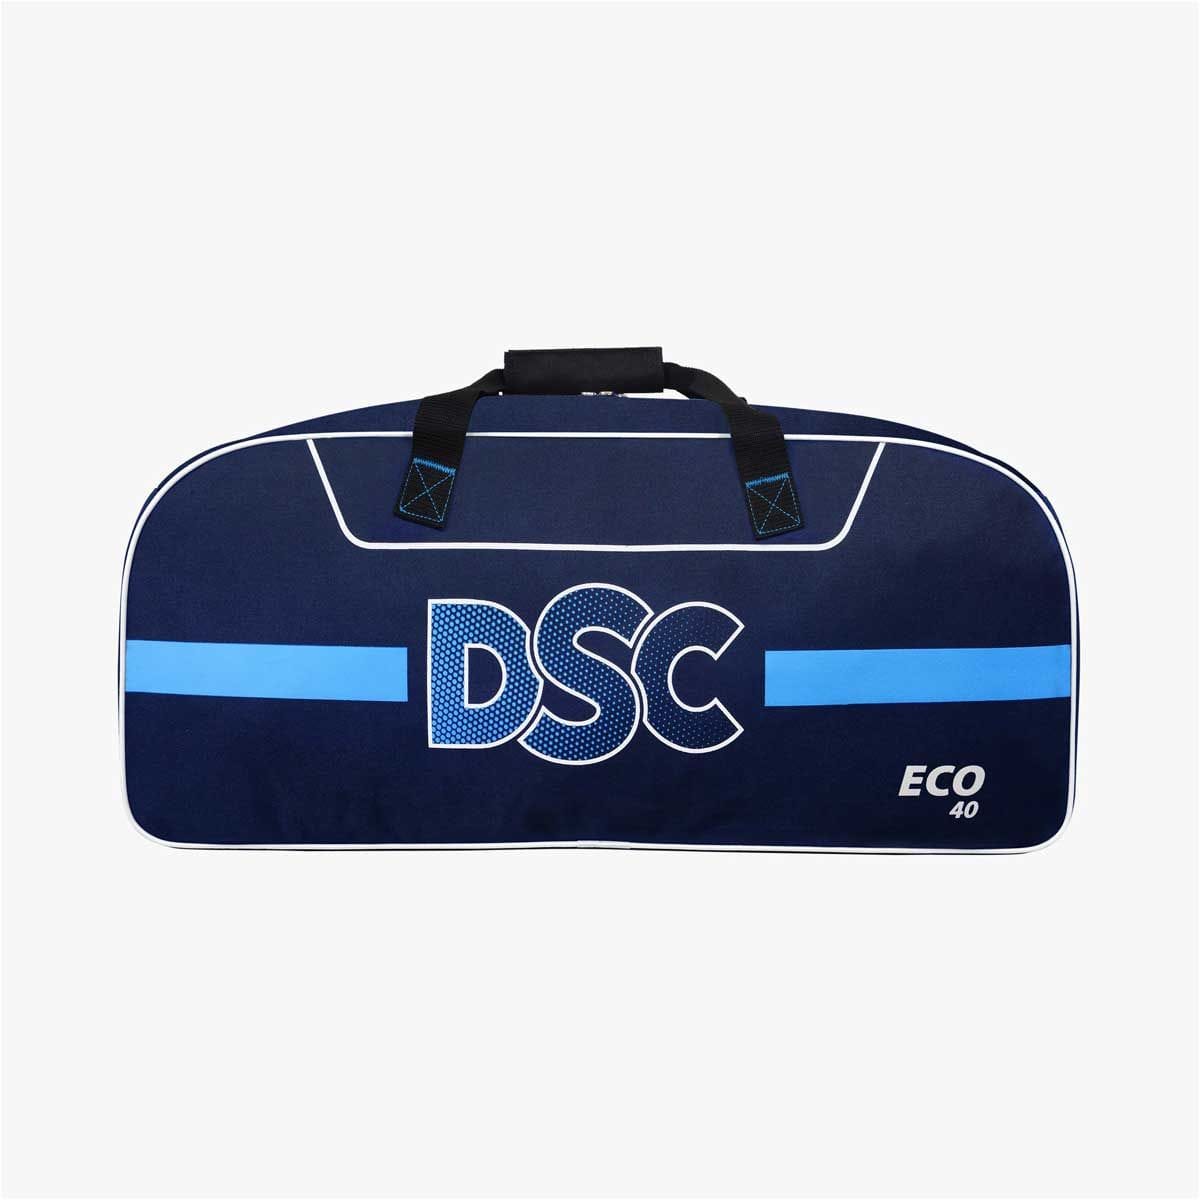 Adidas Cricket Bags DSC Eco 40 Cricket Bag